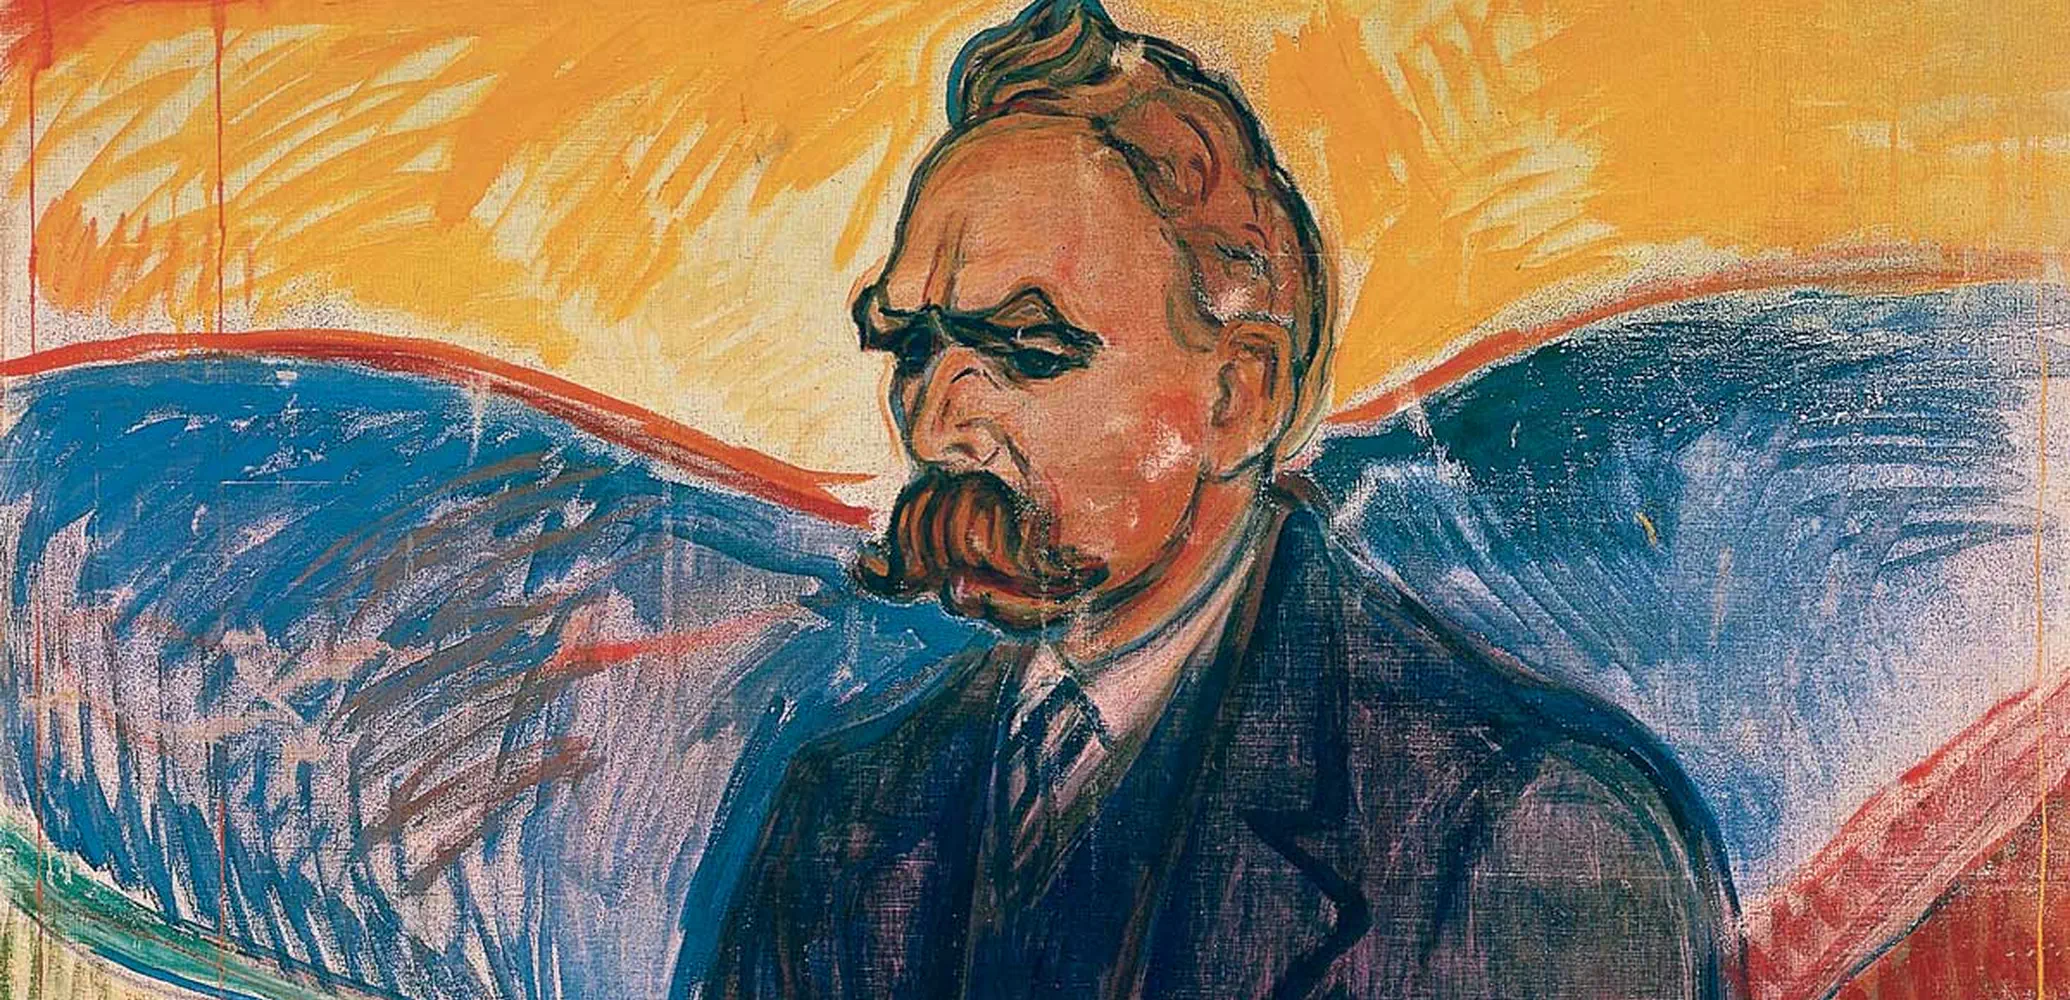 Friedrich Nietzsche door Edvard Munch, 1906.